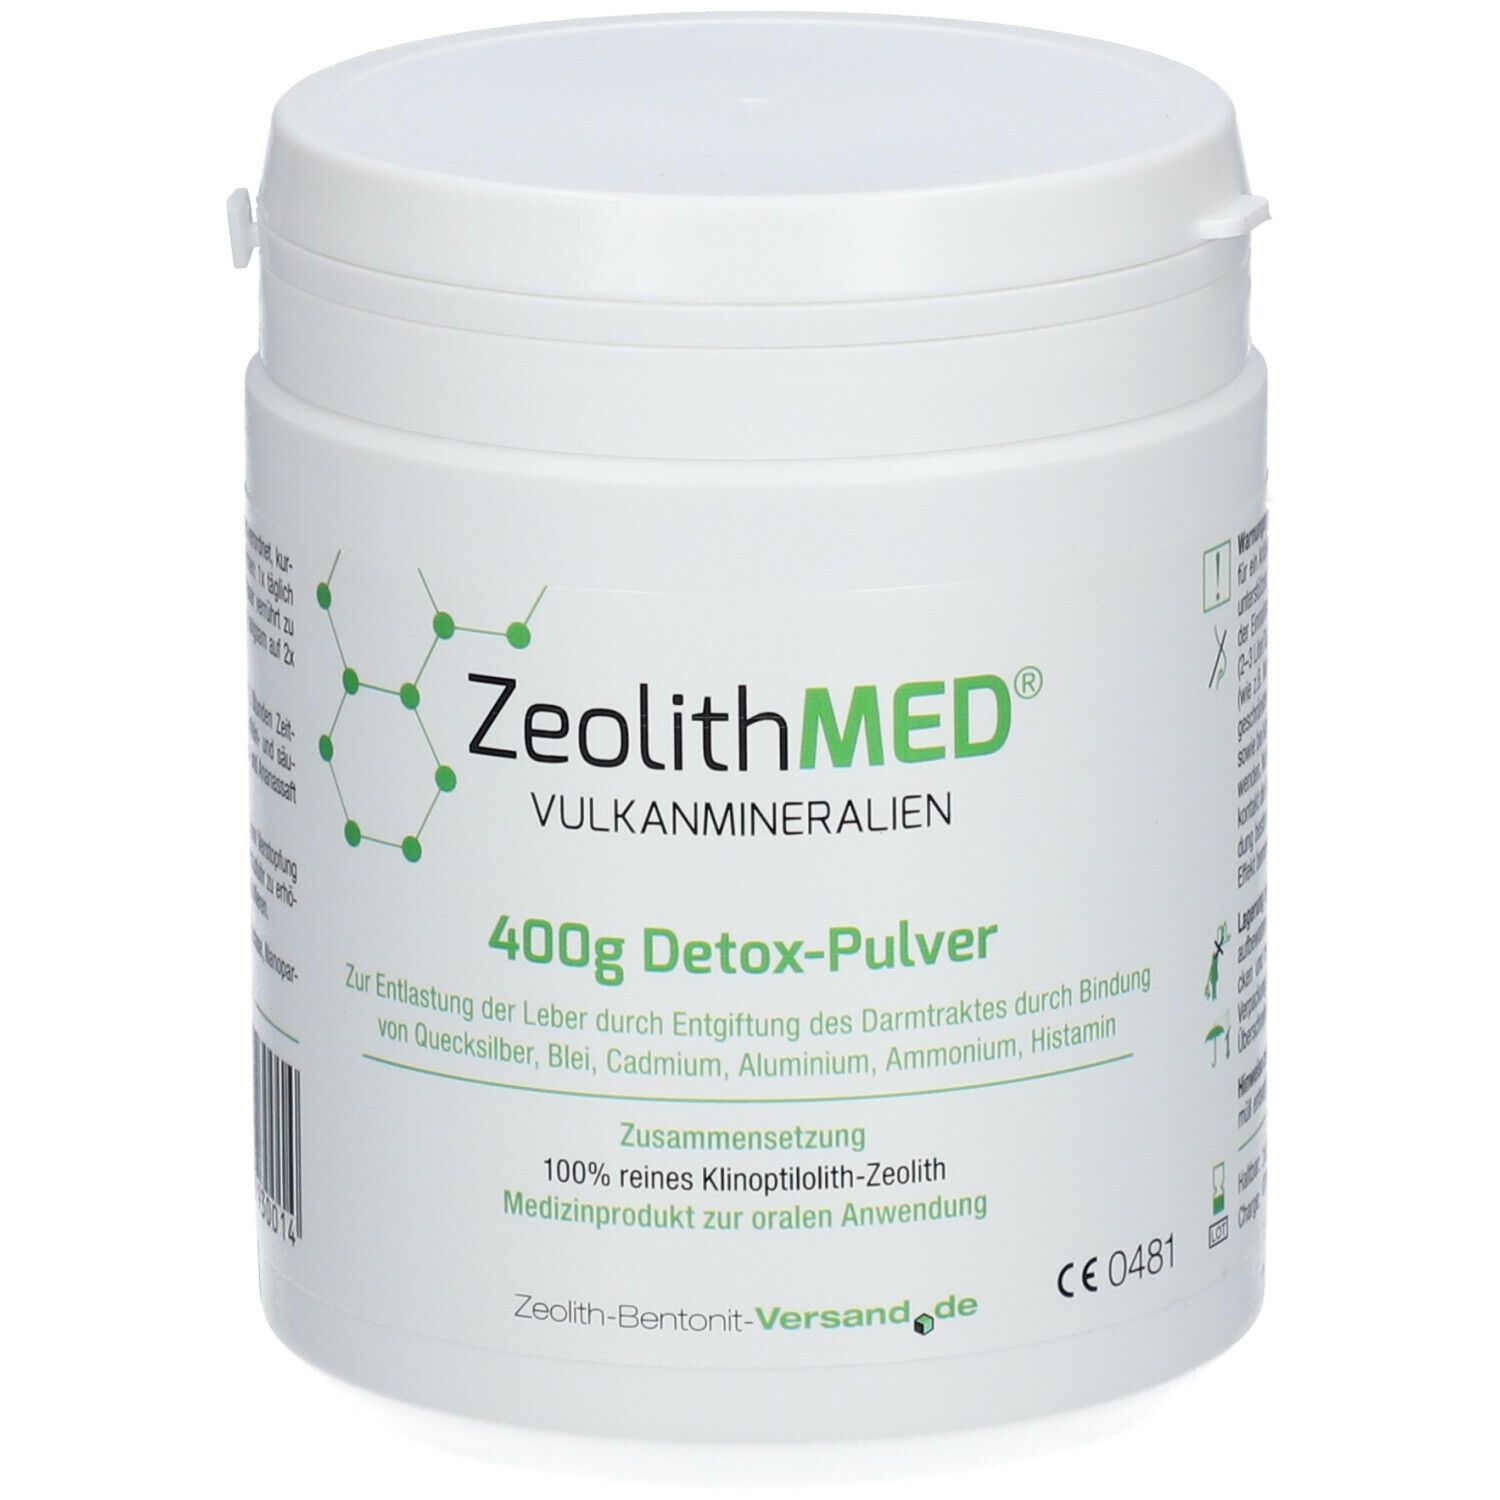 ZeolithMED® 400g Detox-Pulver